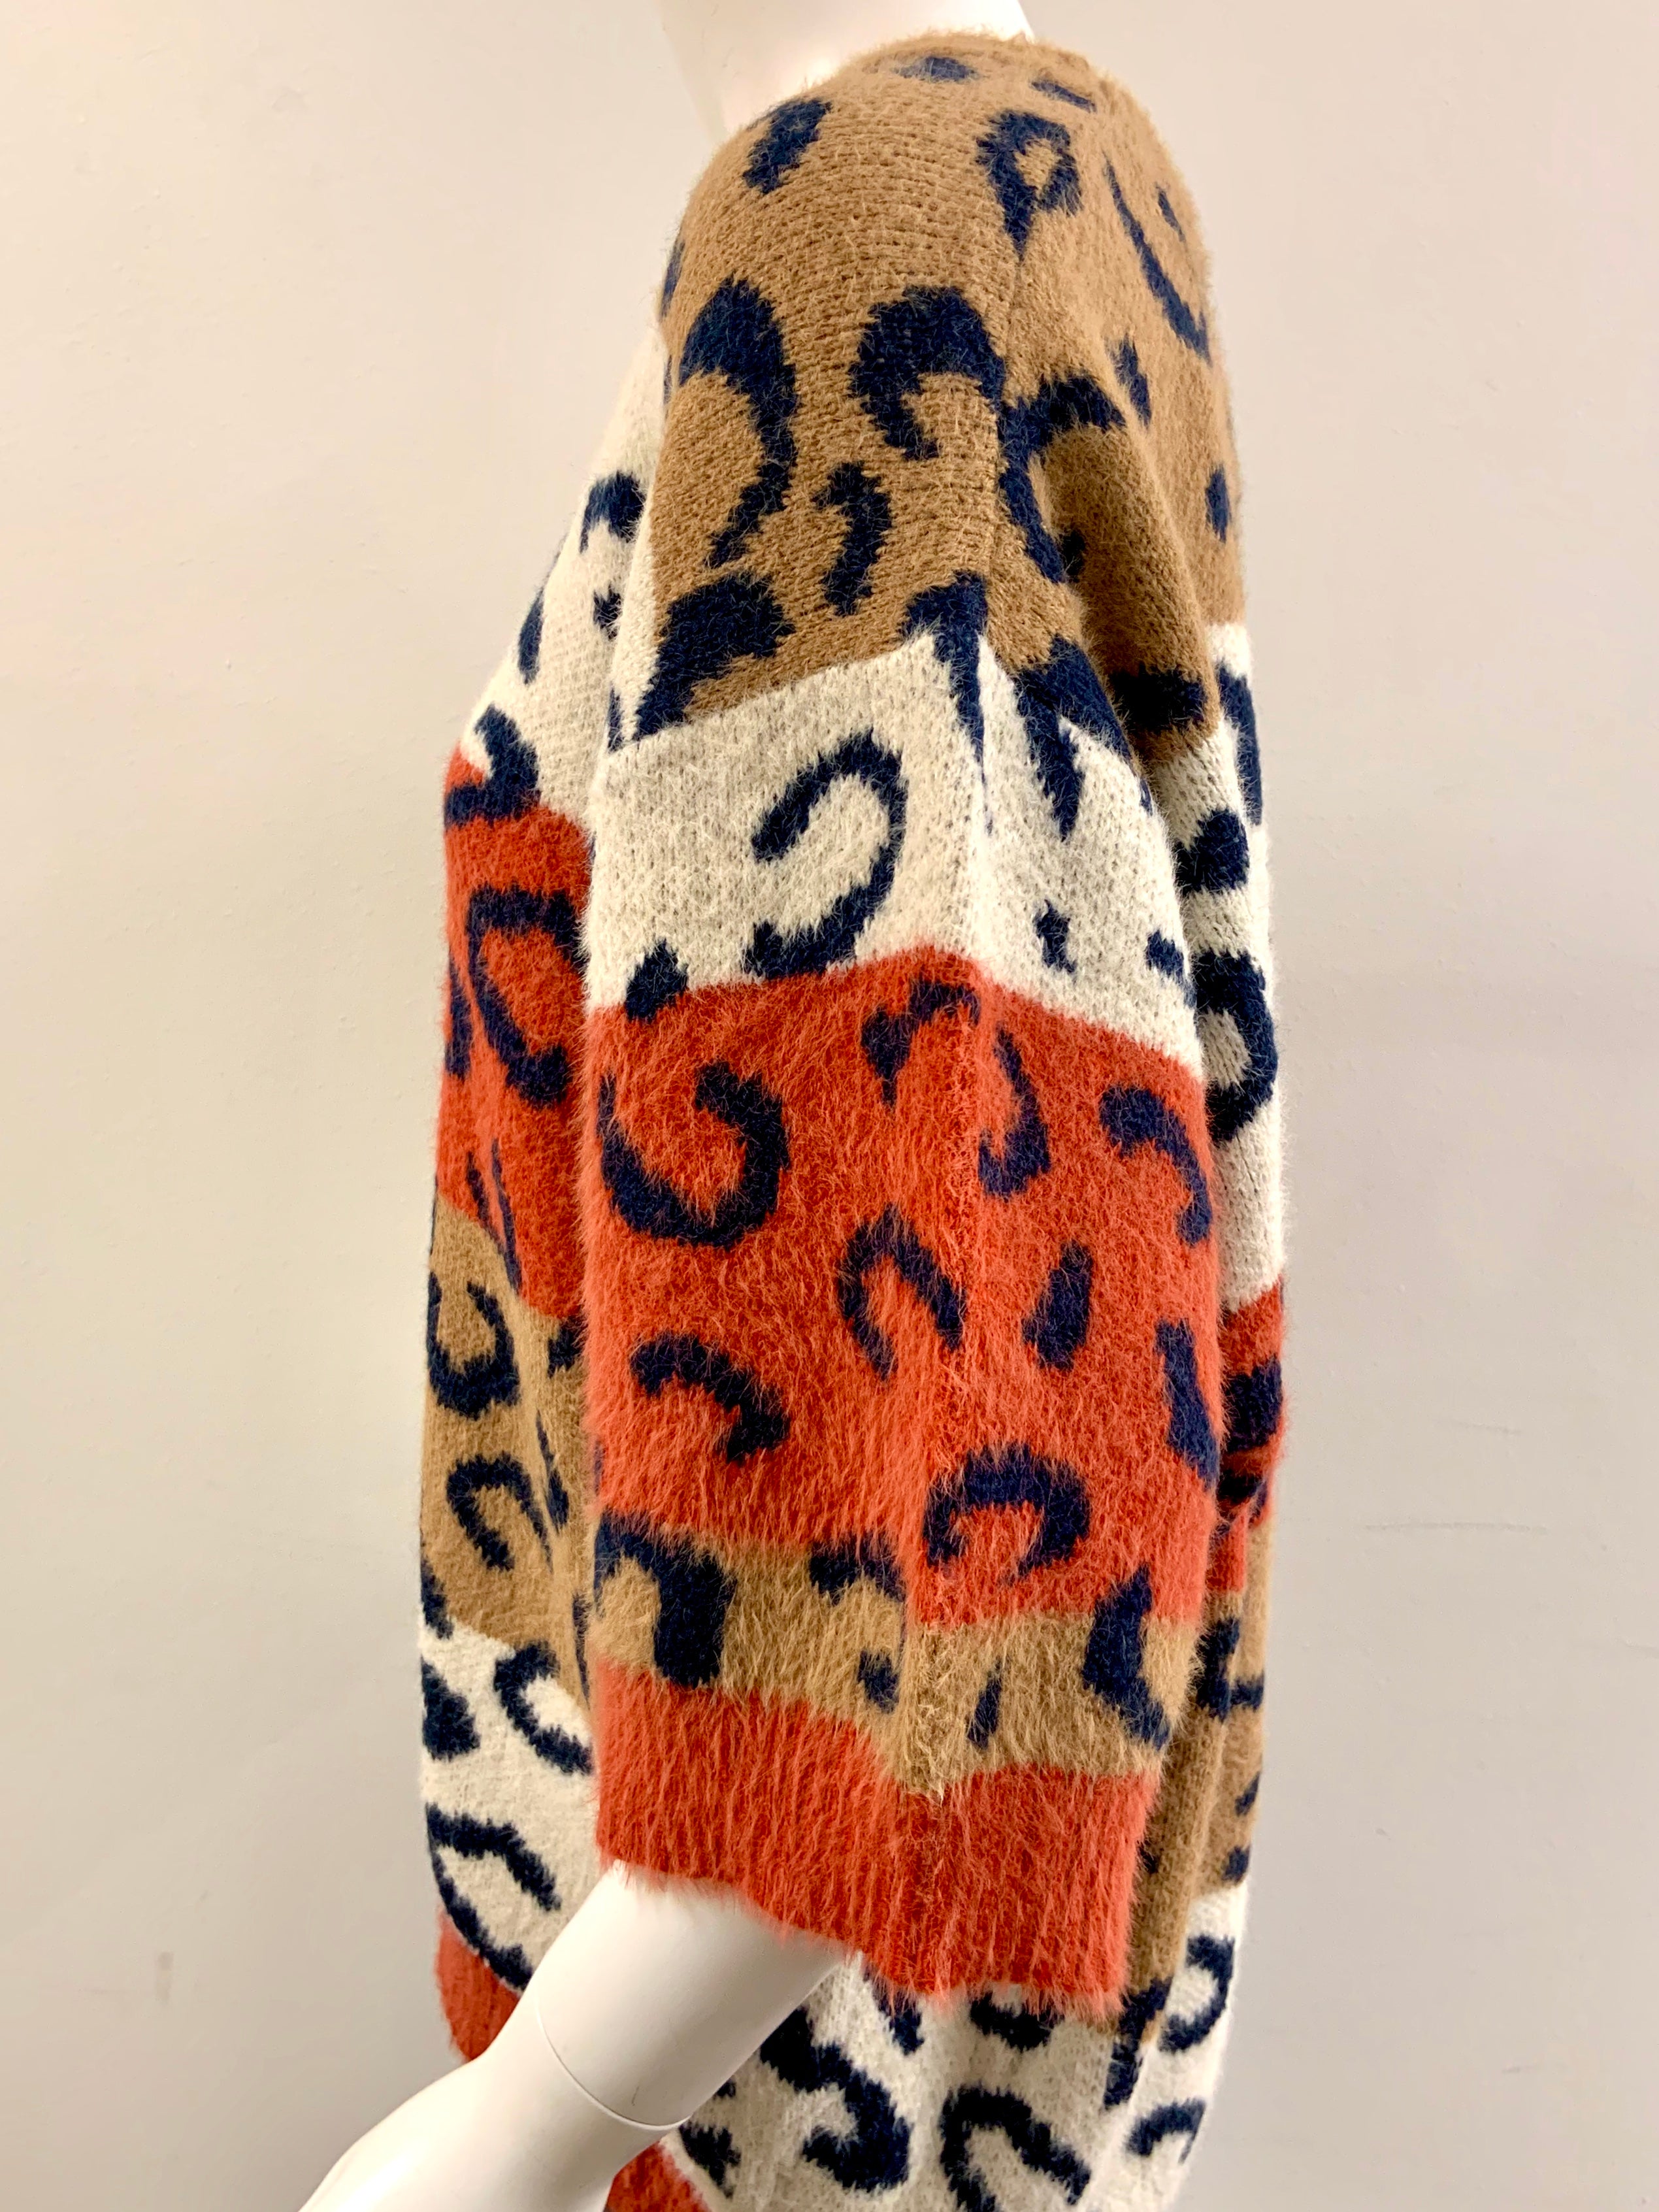 Cheetah Fun Sweater